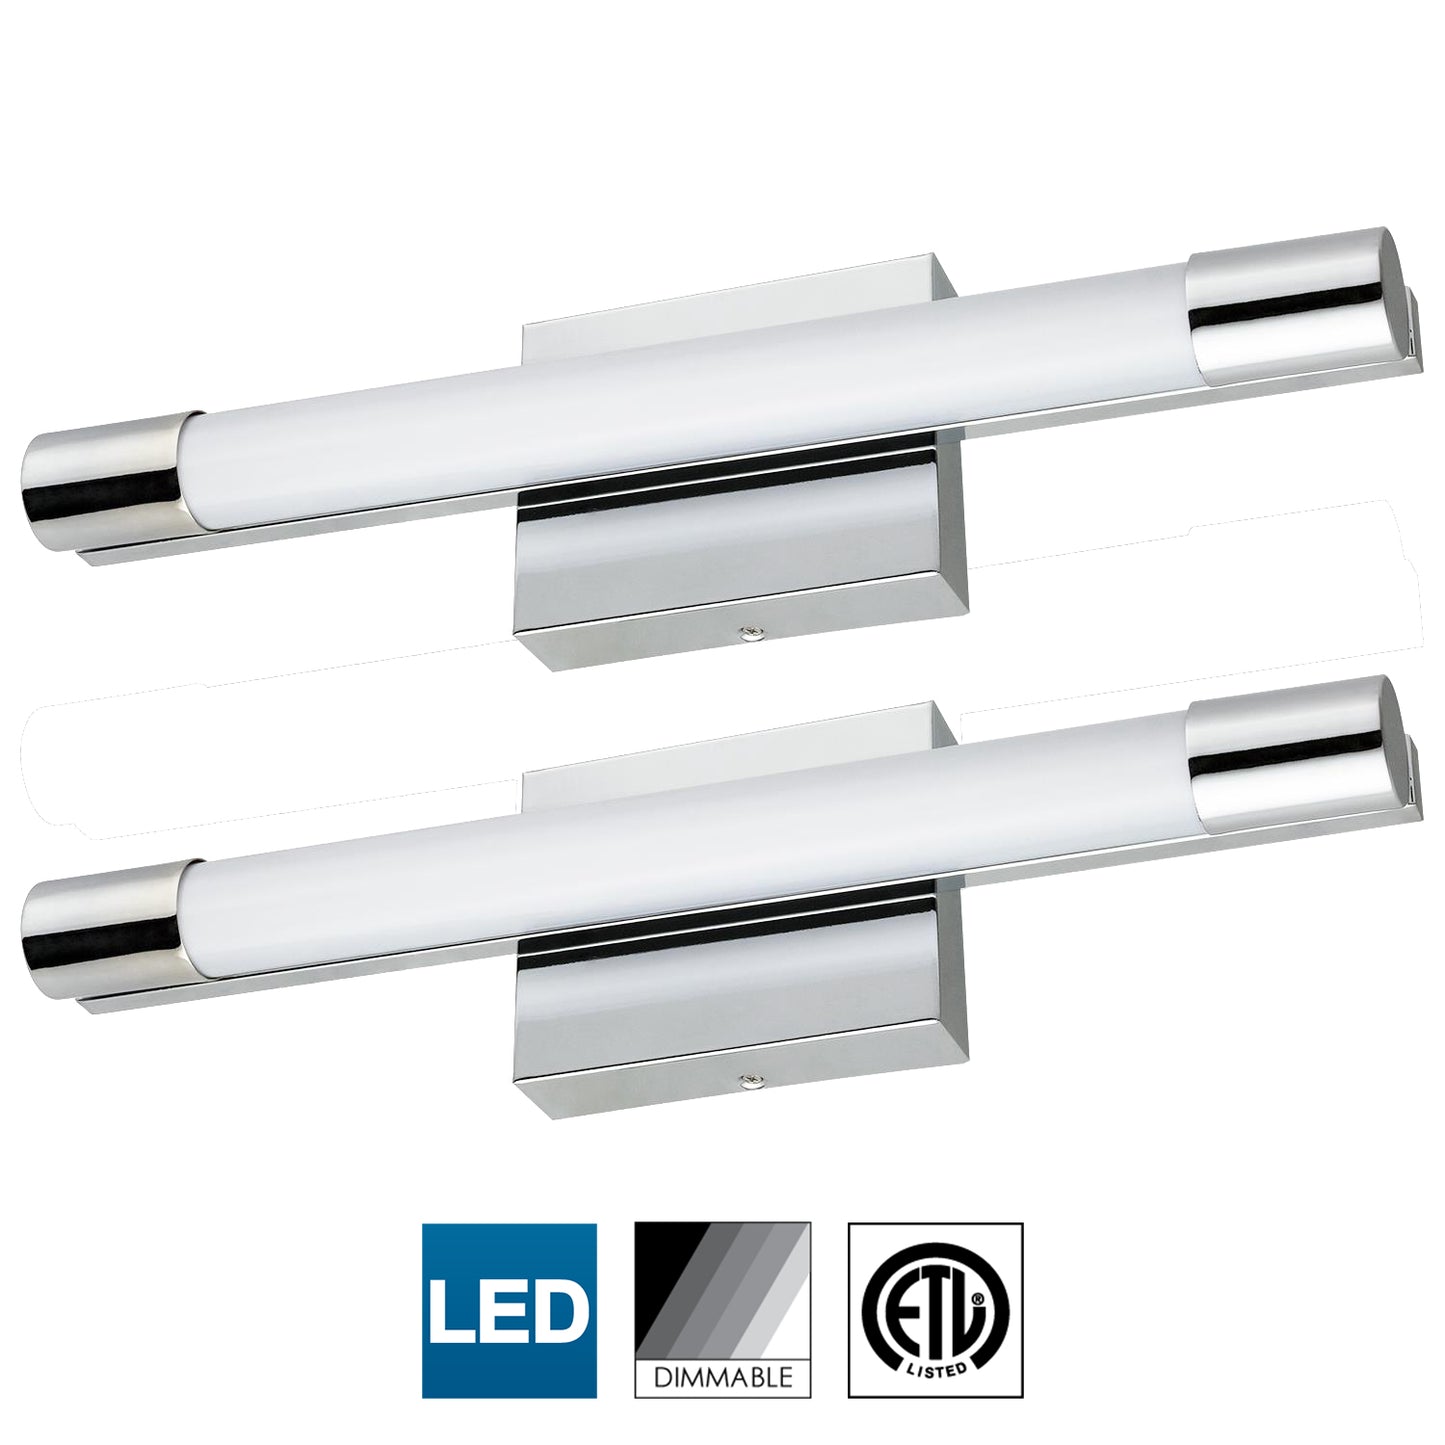 Sunlite 18" Linear LED Vanity Light Fixture, 20 Watt (120W Equal), Dimmable, 4000K Cool White, Chrome Finish